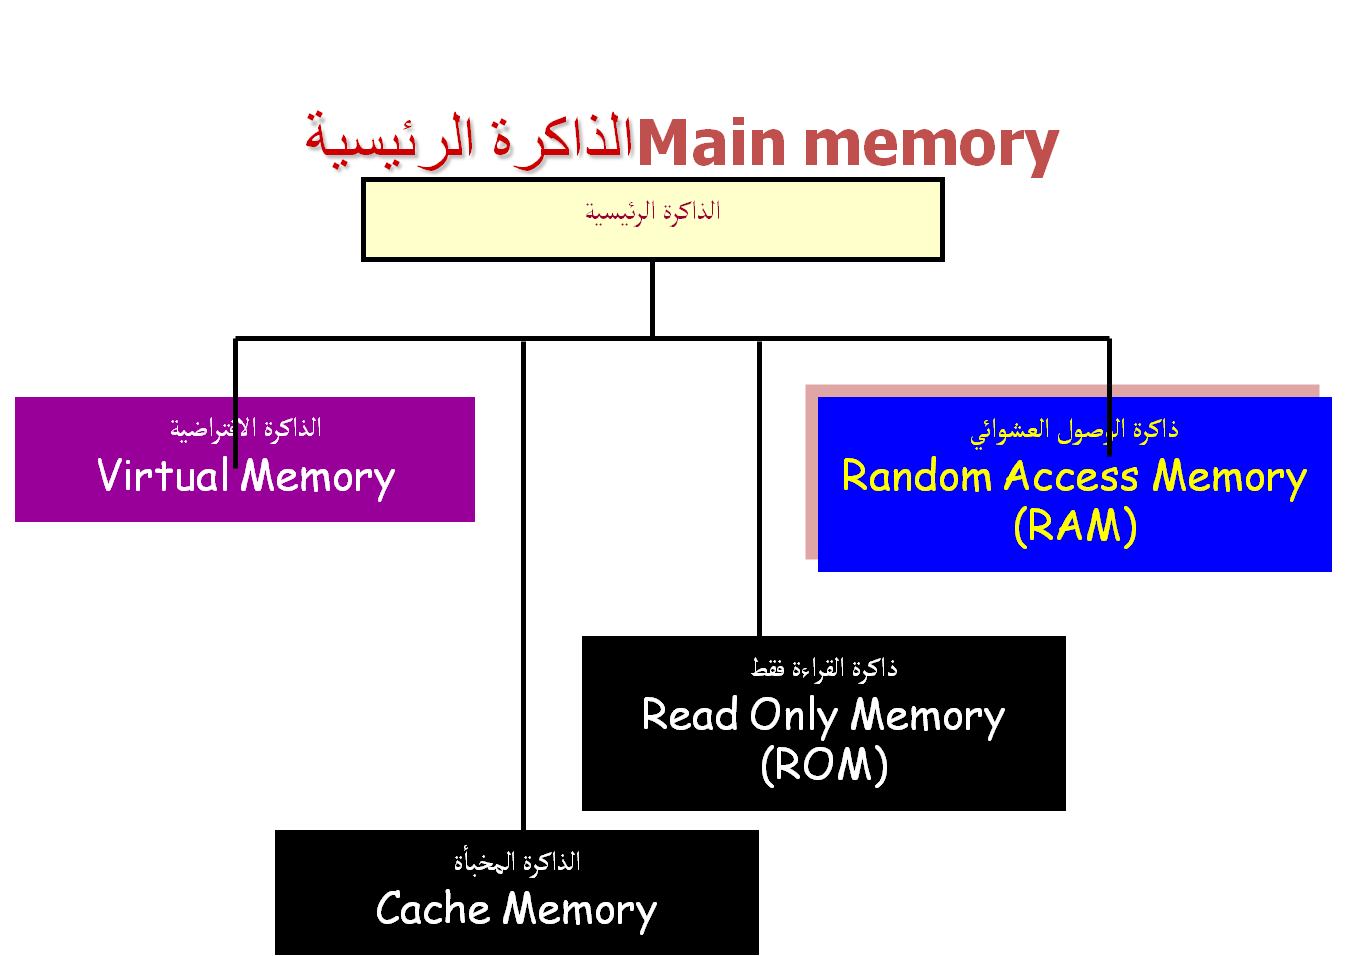 الرئيسية هي للحاسب الذاكرة نقصد بالمصطلح